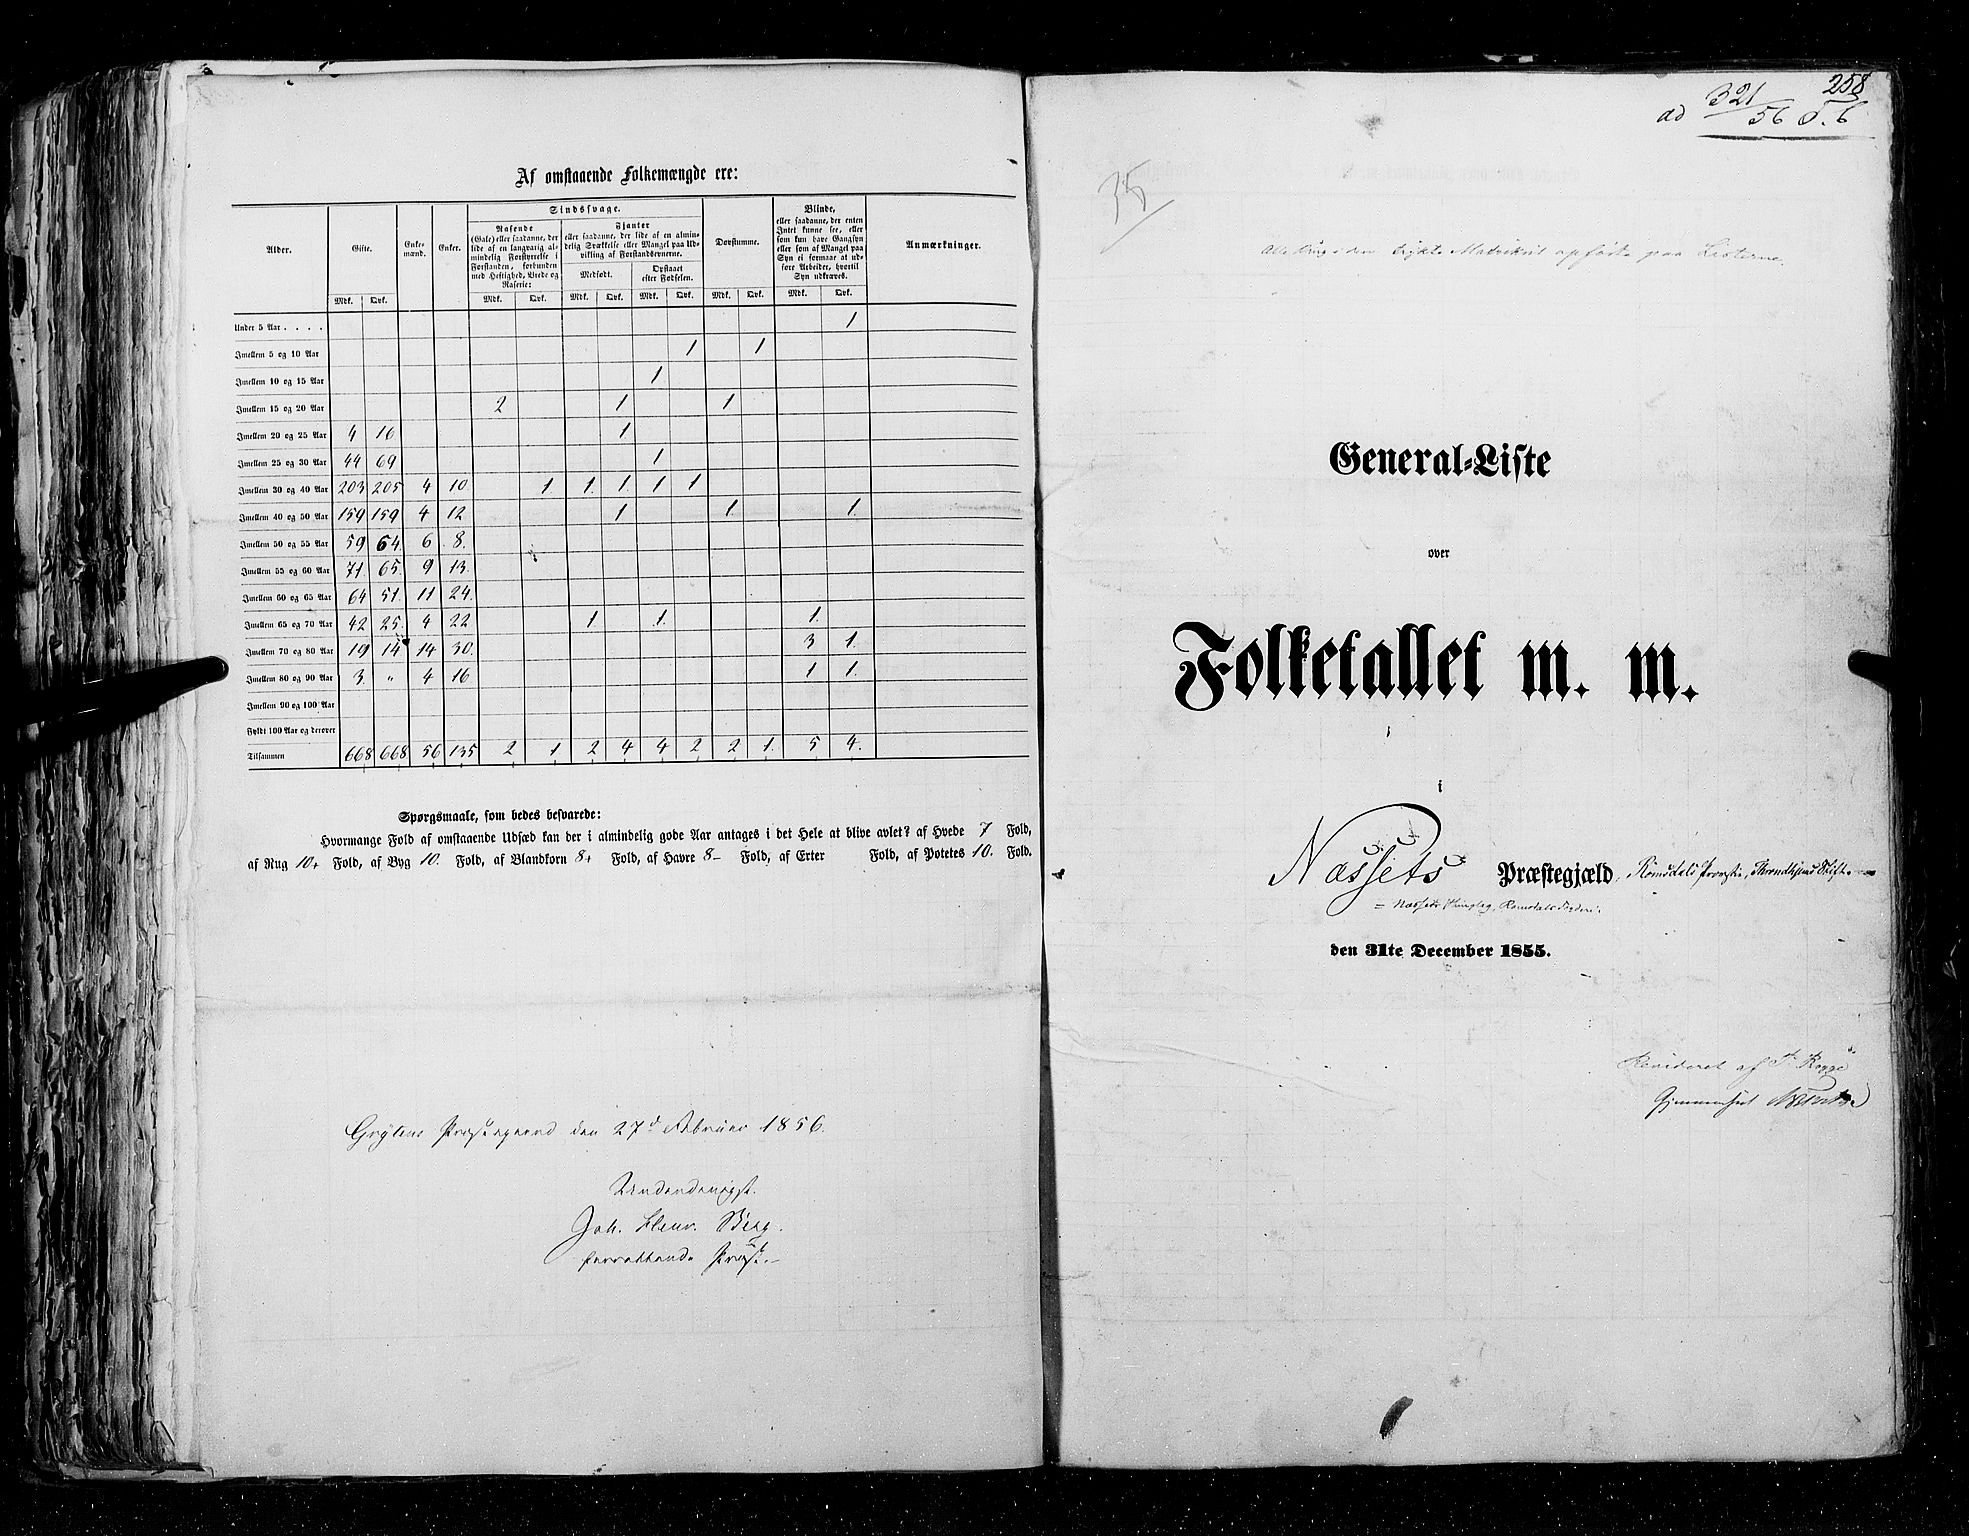 RA, Census 1855, vol. 5: Nordre Bergenhus amt, Romsdal amt og Søndre Trondhjem amt, 1855, p. 258